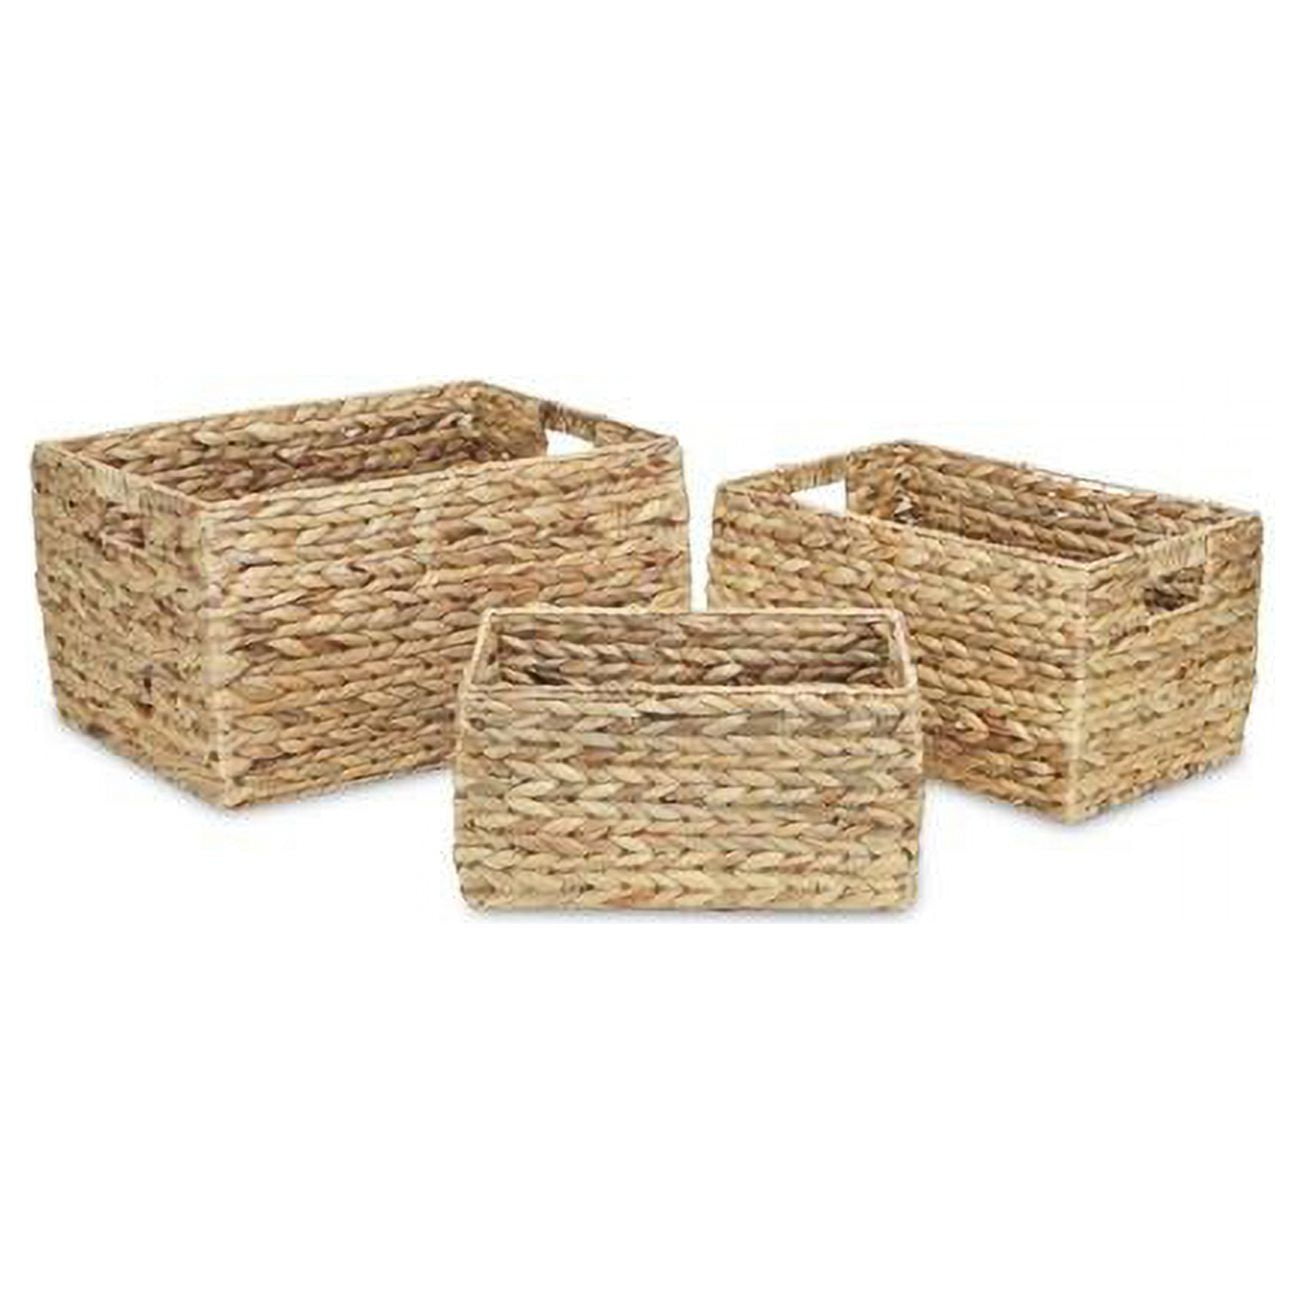 5467-3 Rectangular Water Hyacinth Basket With Round Edge - Set Of 3